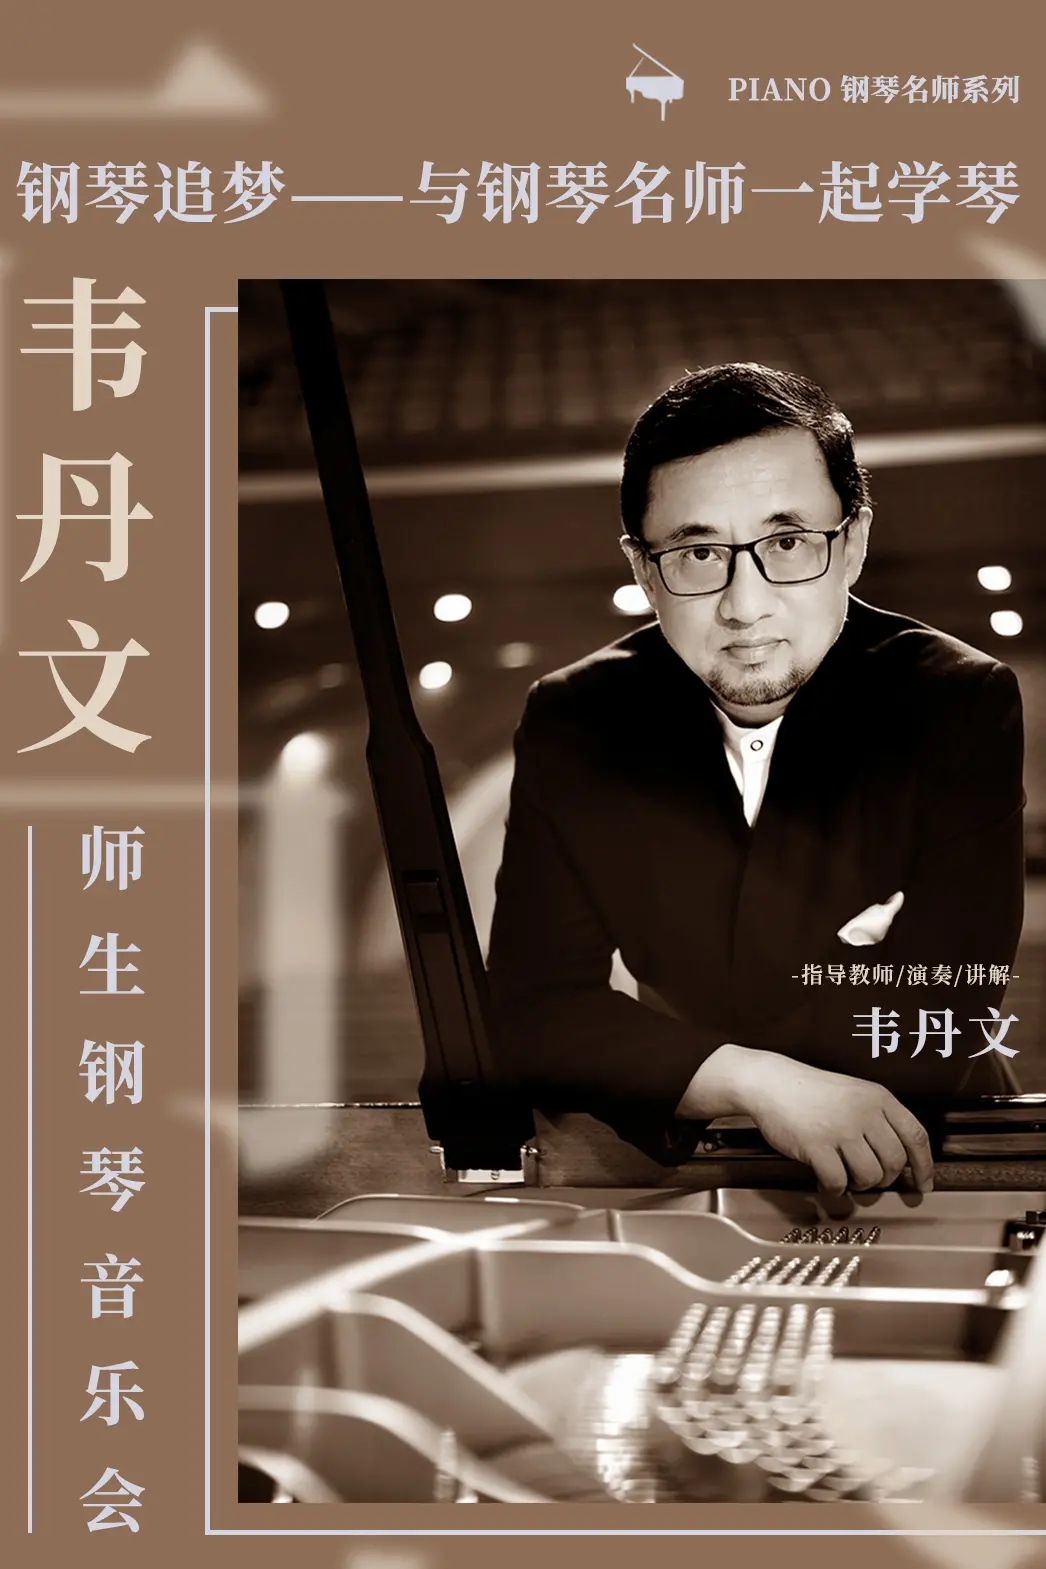 韦丹文师生钢琴音乐会北京站